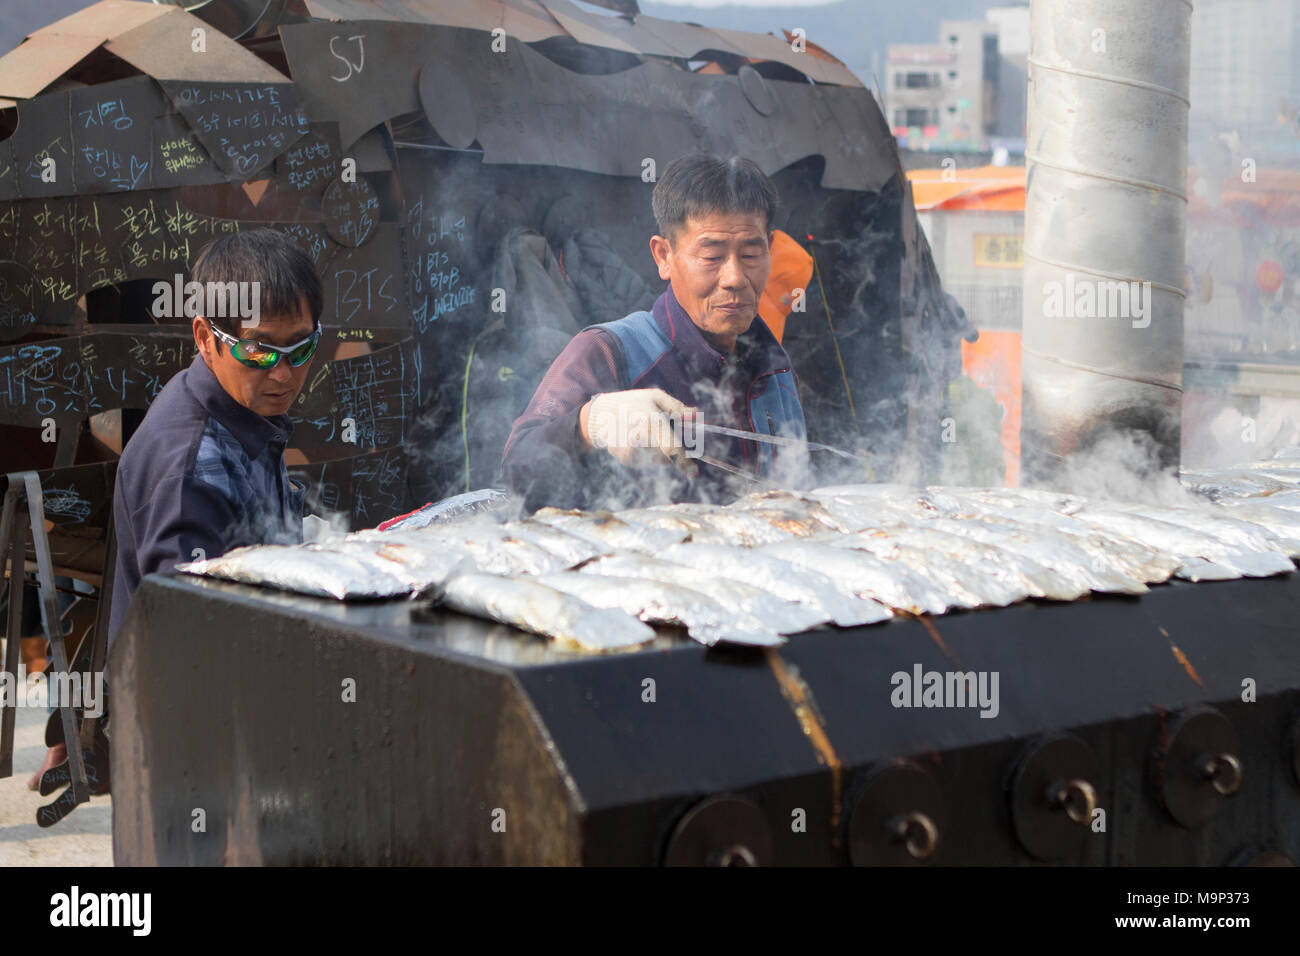 Un homme est la cuisson des poissons fraîchement pêchés à l'Hwacheon Sancheoneo ice festival. L'Hwacheon Sancheoneo Ice Festival est une tradition pour les coréens. Chaque année en janvier les foules se rassemblent à la rivière gelée pour célébrer le froid et la neige de l'hiver. L'attraction principale est la pêche sur glace. Jeunes et vieux attendent patiemment sur un petit trou dans la glace pour une truite de mordre. Dans des tentes qu'ils peuvent laisser les poissons grillés après qu'ils soient mangés. Parmi les autres activités sont la luge et le patinage sur glace. La proximité de la région de Pyeongchang accueillera les Jeux Olympiques d'hiver en février 2018. Banque D'Images